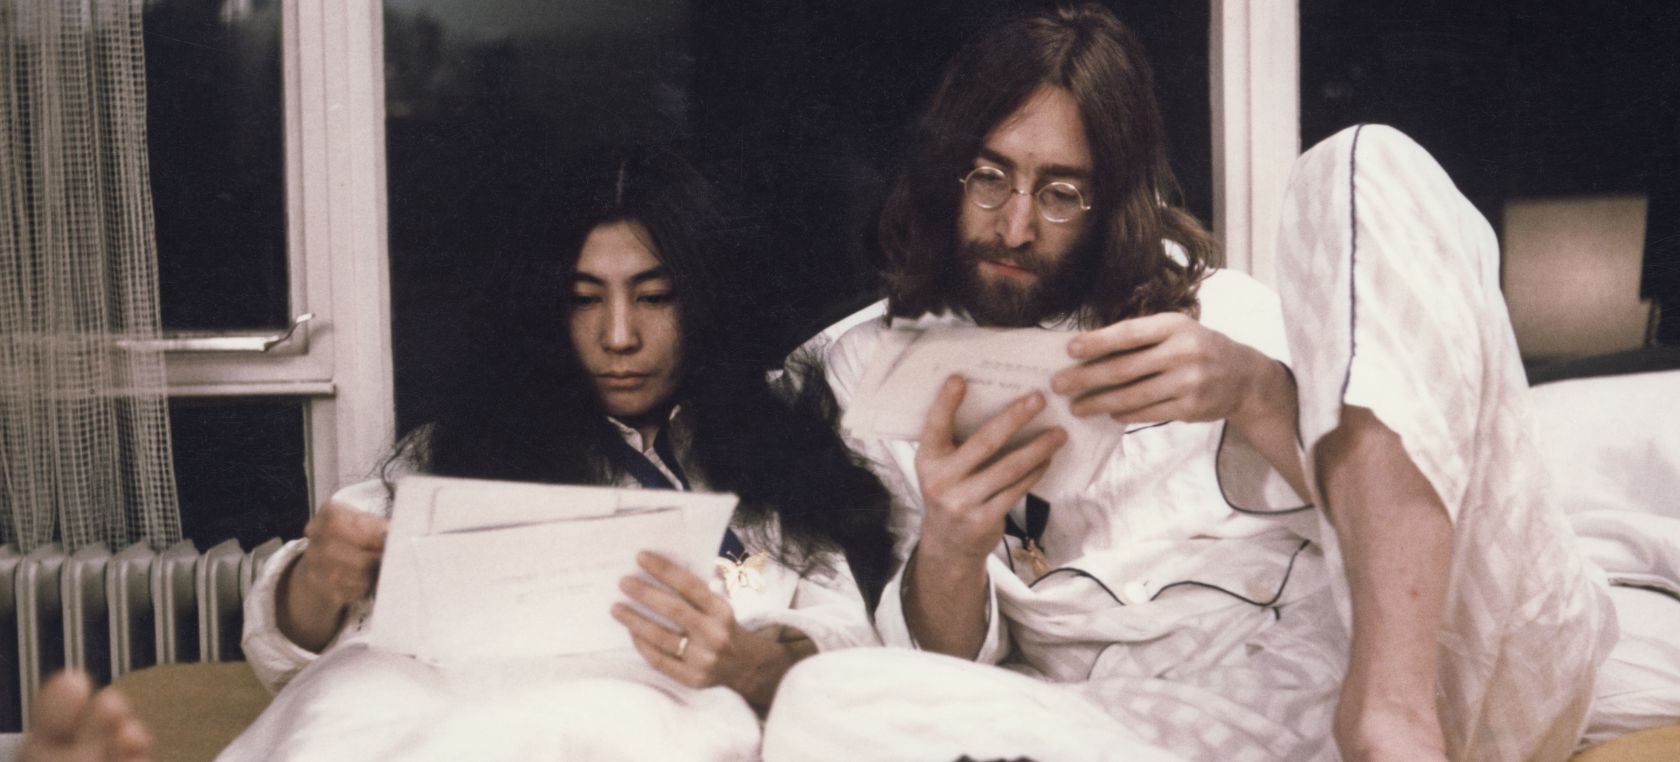 'Beautiful Boy (Darling Boy)': La emotiva historia detrás de la canción que John Lennon escribió a su hijo